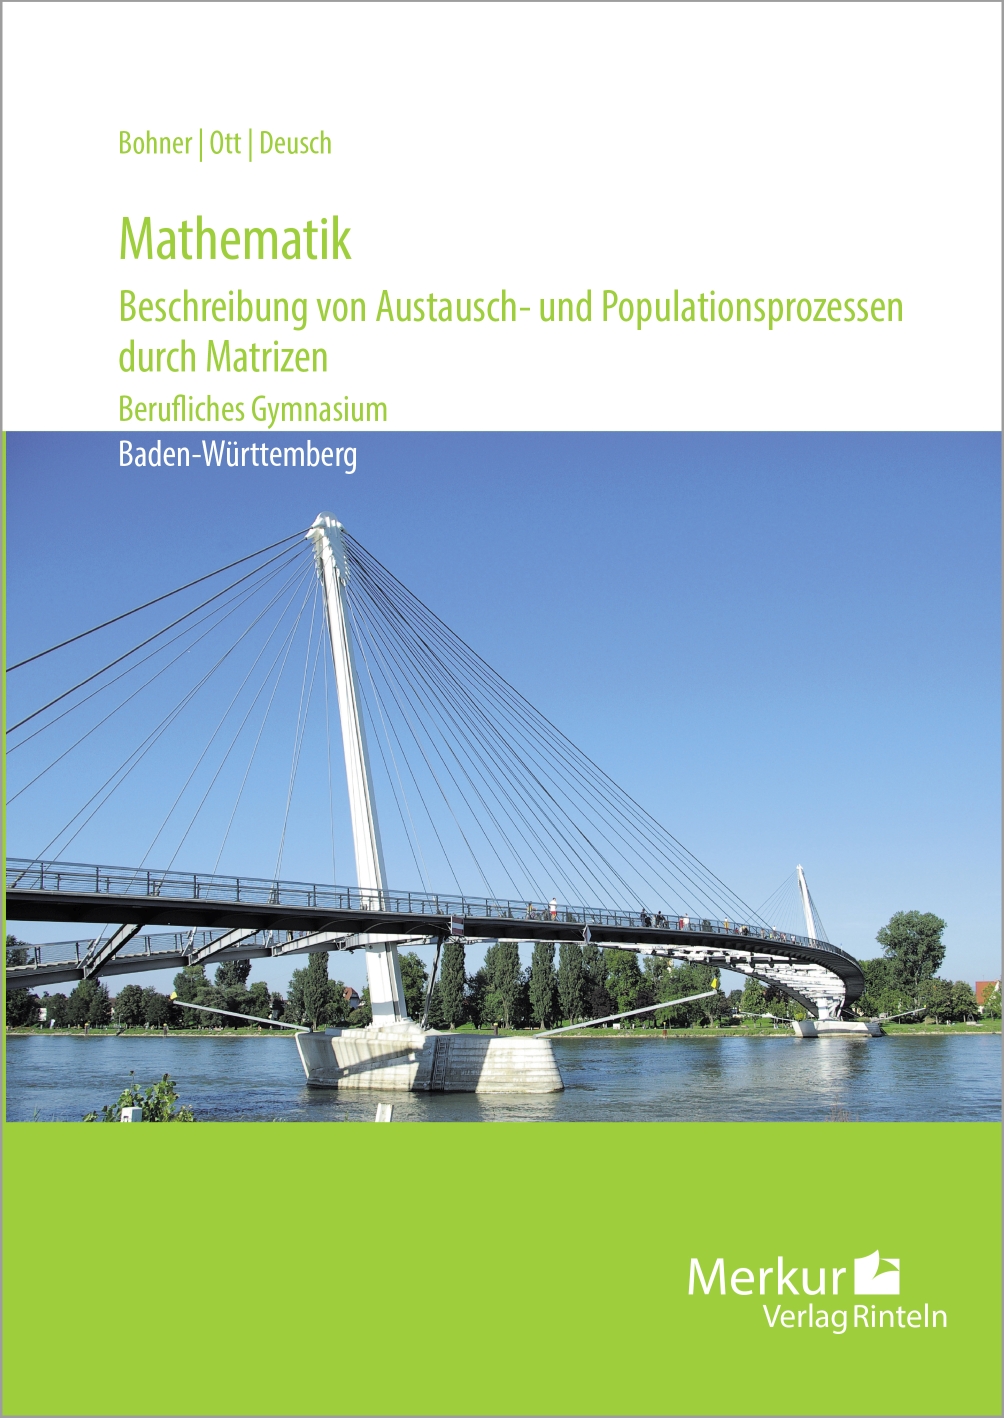 Mathematik - Beschreibung von Austausch- und Populationsprozessen durch Matrizen - Berufliches Gymnasium